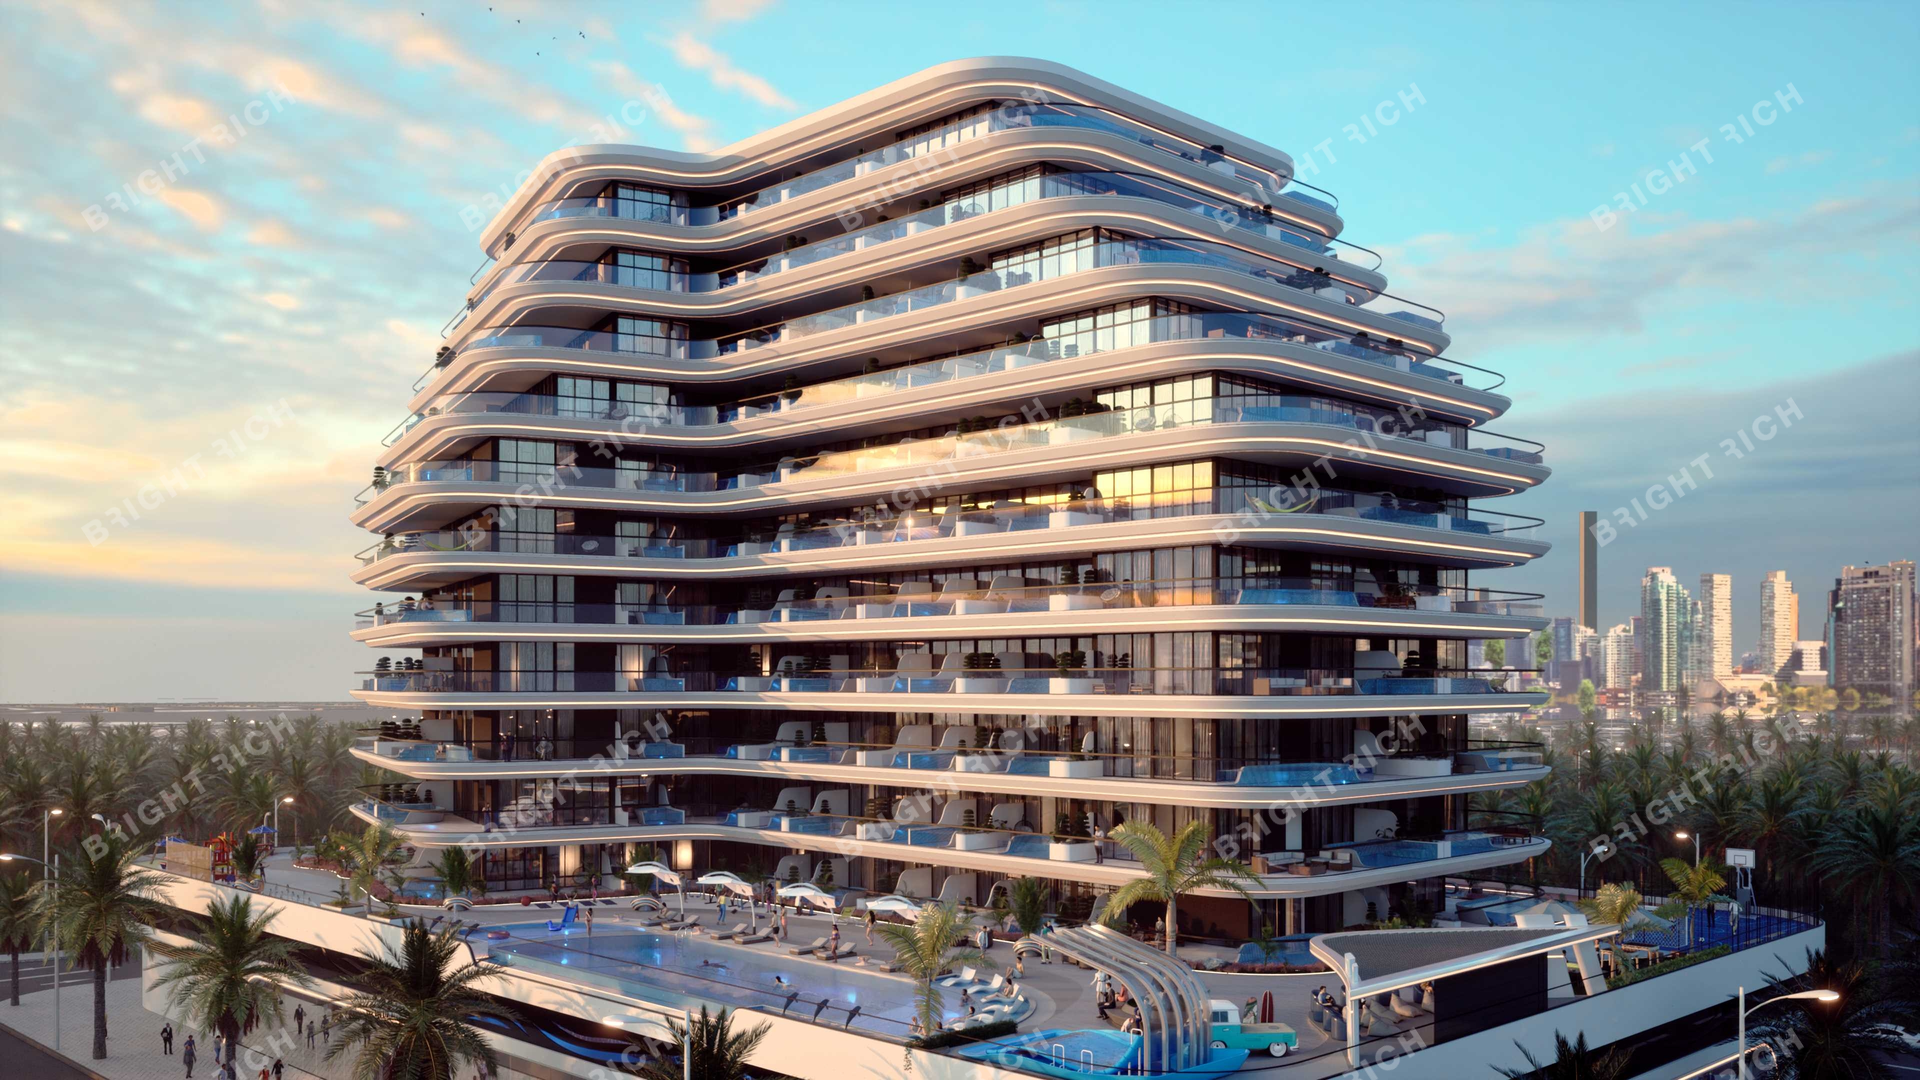 Samana Portofino, apart complex in Dubai - 5